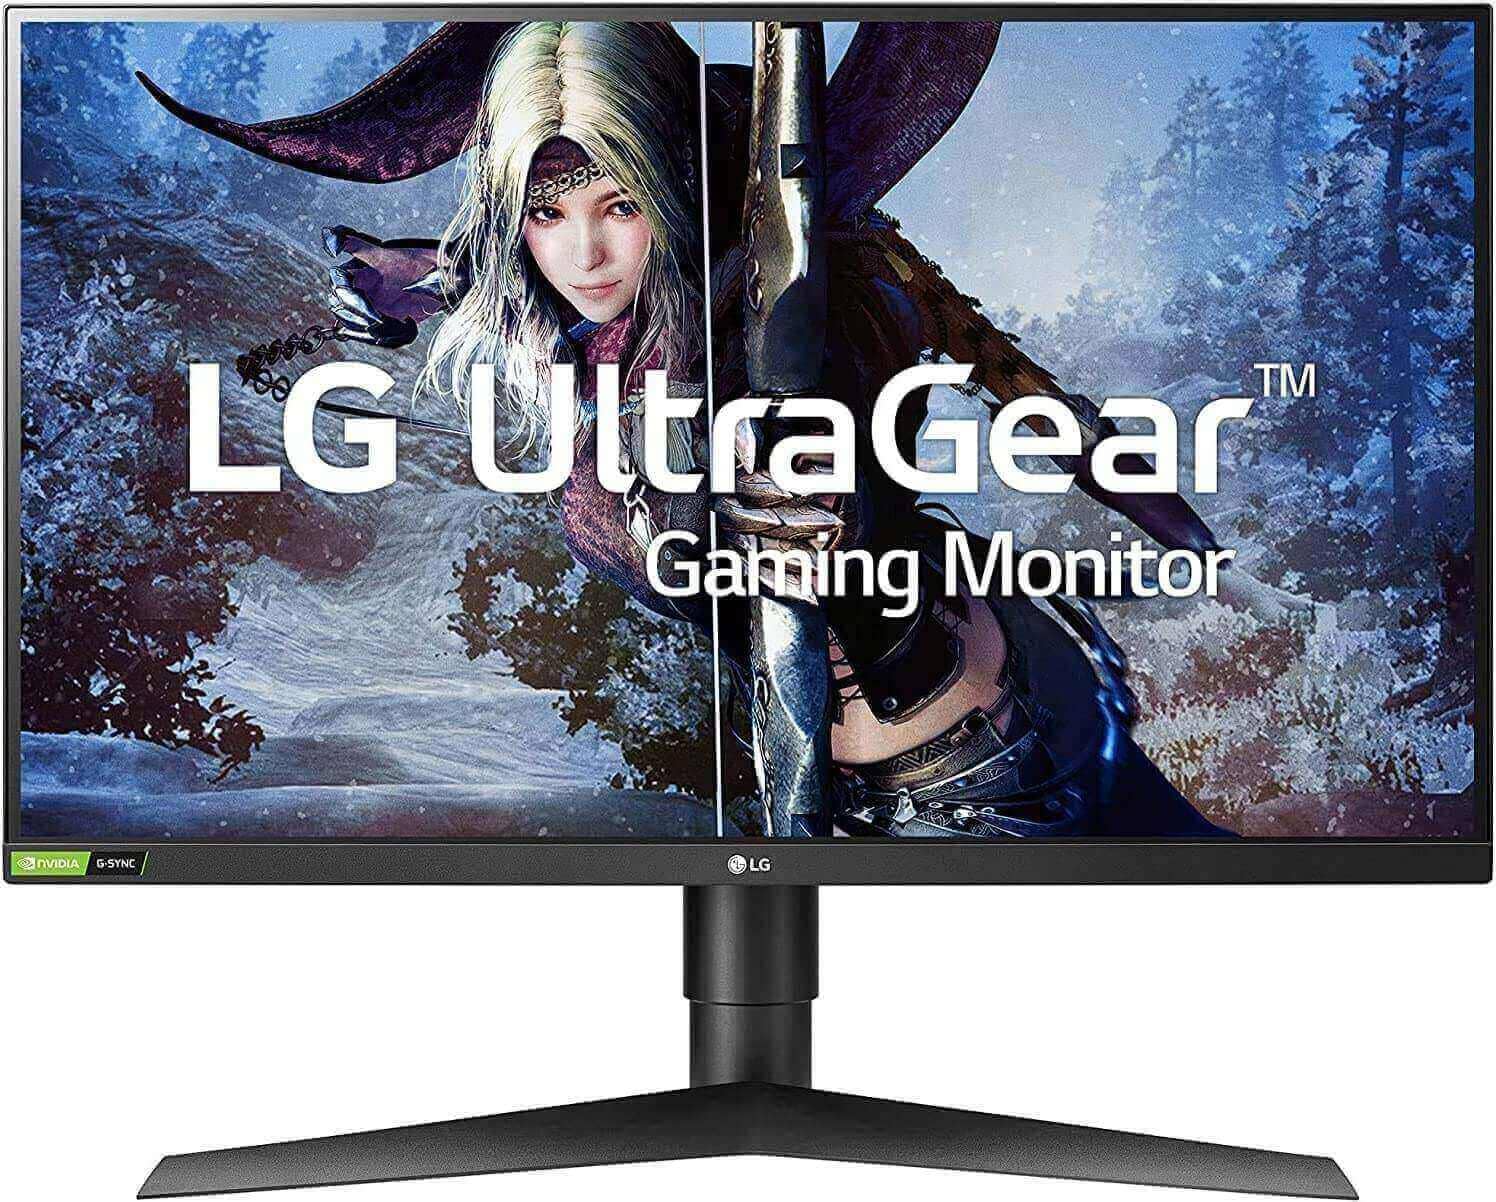 LG UltraGear QHD